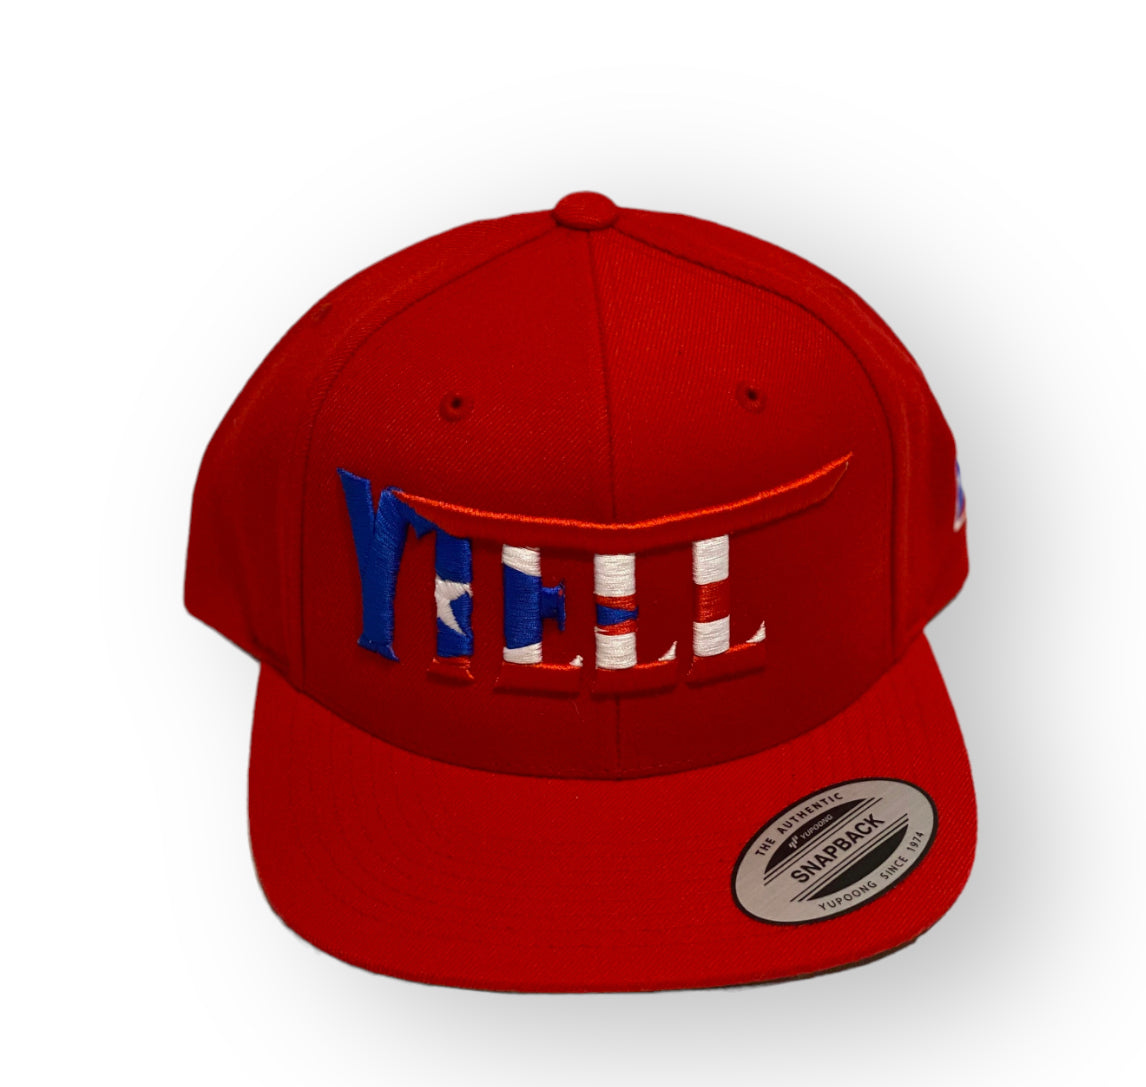 YTELL™ Snapbacks hats